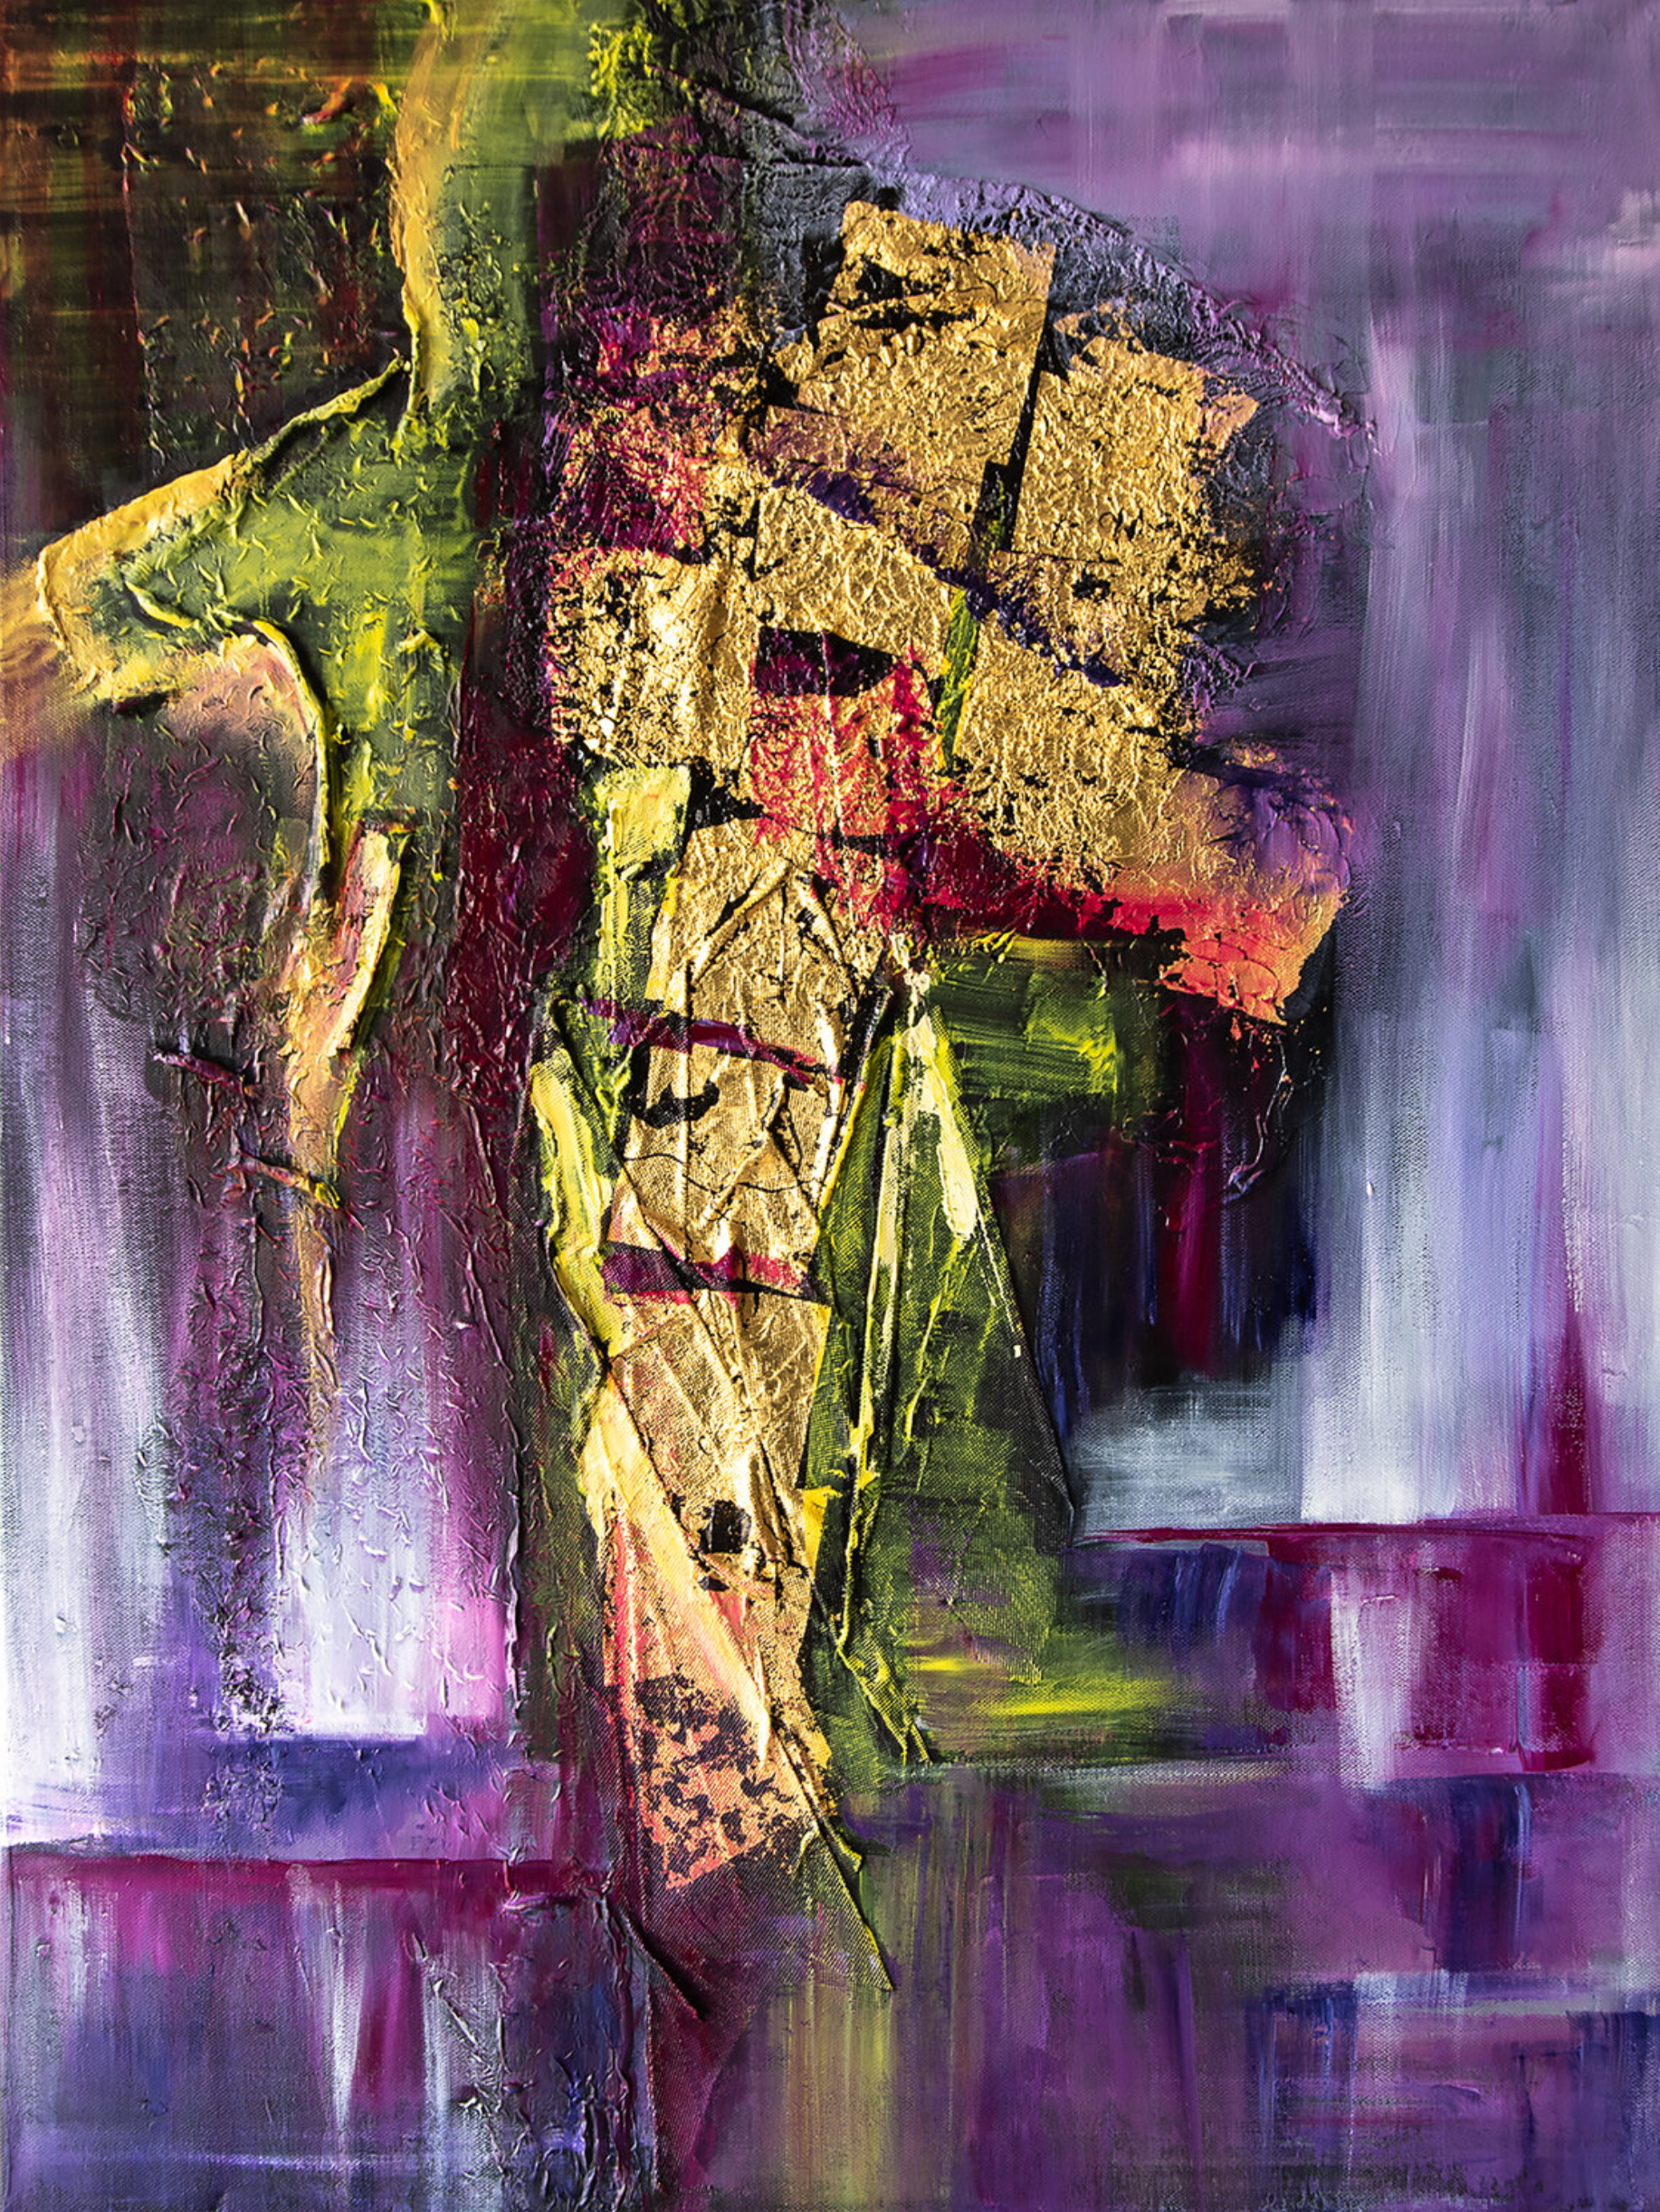 La peinture abstraite "Spectral" de Françoise Dugourd-Caput présente une abstraction lyrique, dans une gamme colorée de violet et de vert qui accompagne l'or des feuilles collées sur le mélange Avec de l'imagination, nous pouvons voir une silhouette qui émerge derrière un tas d'or, donnant l'impression de porter un lourd fardeau ou d'essayer d'y échapper